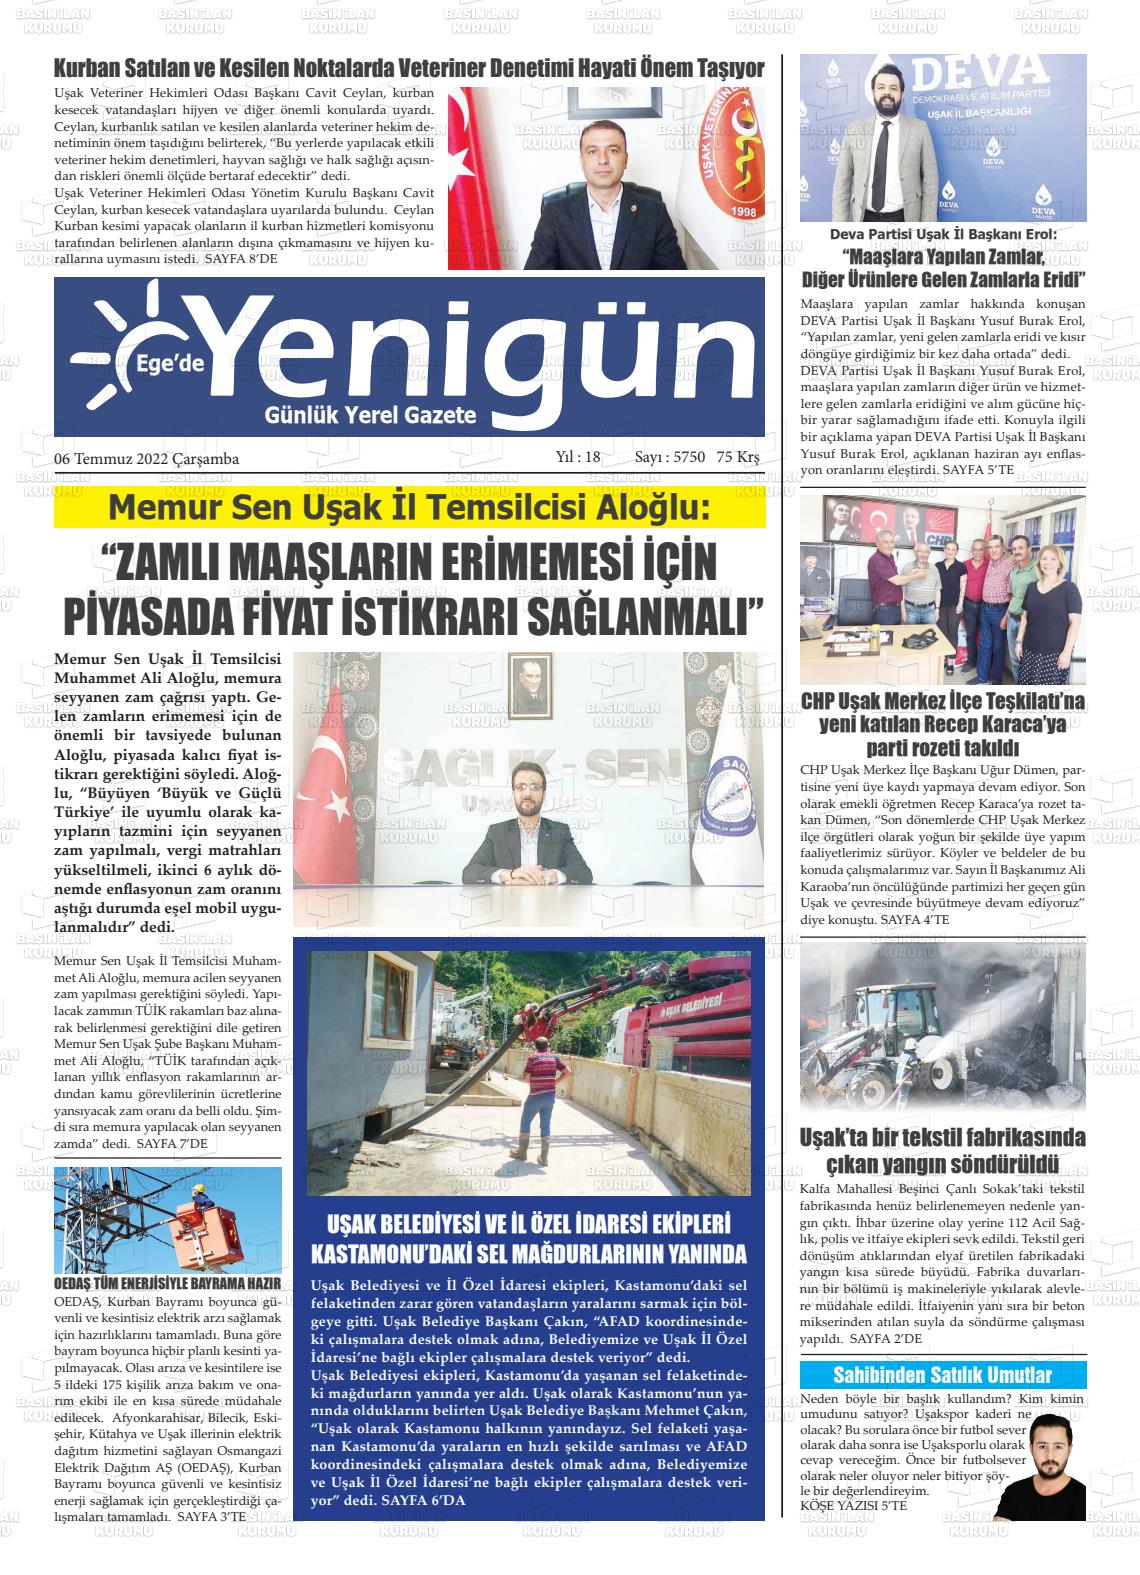 06 Temmuz 2022 EGE'DE YENİGÜN GAZETESİ Gazete Manşeti